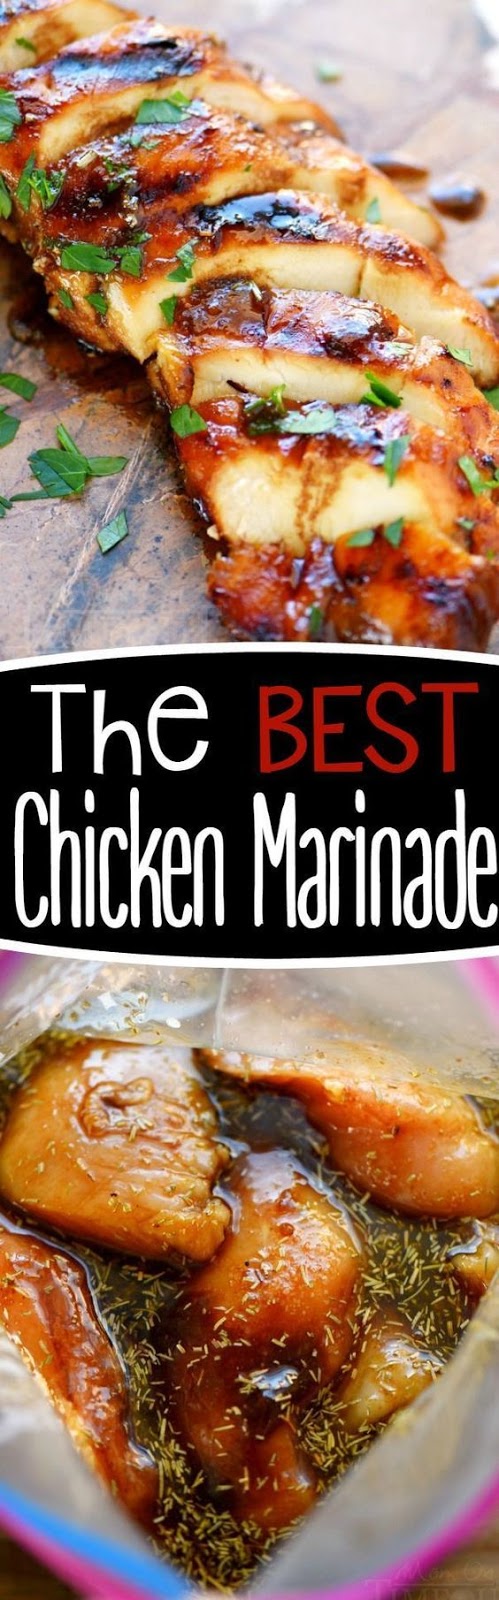 The BEST Chicken Marinade